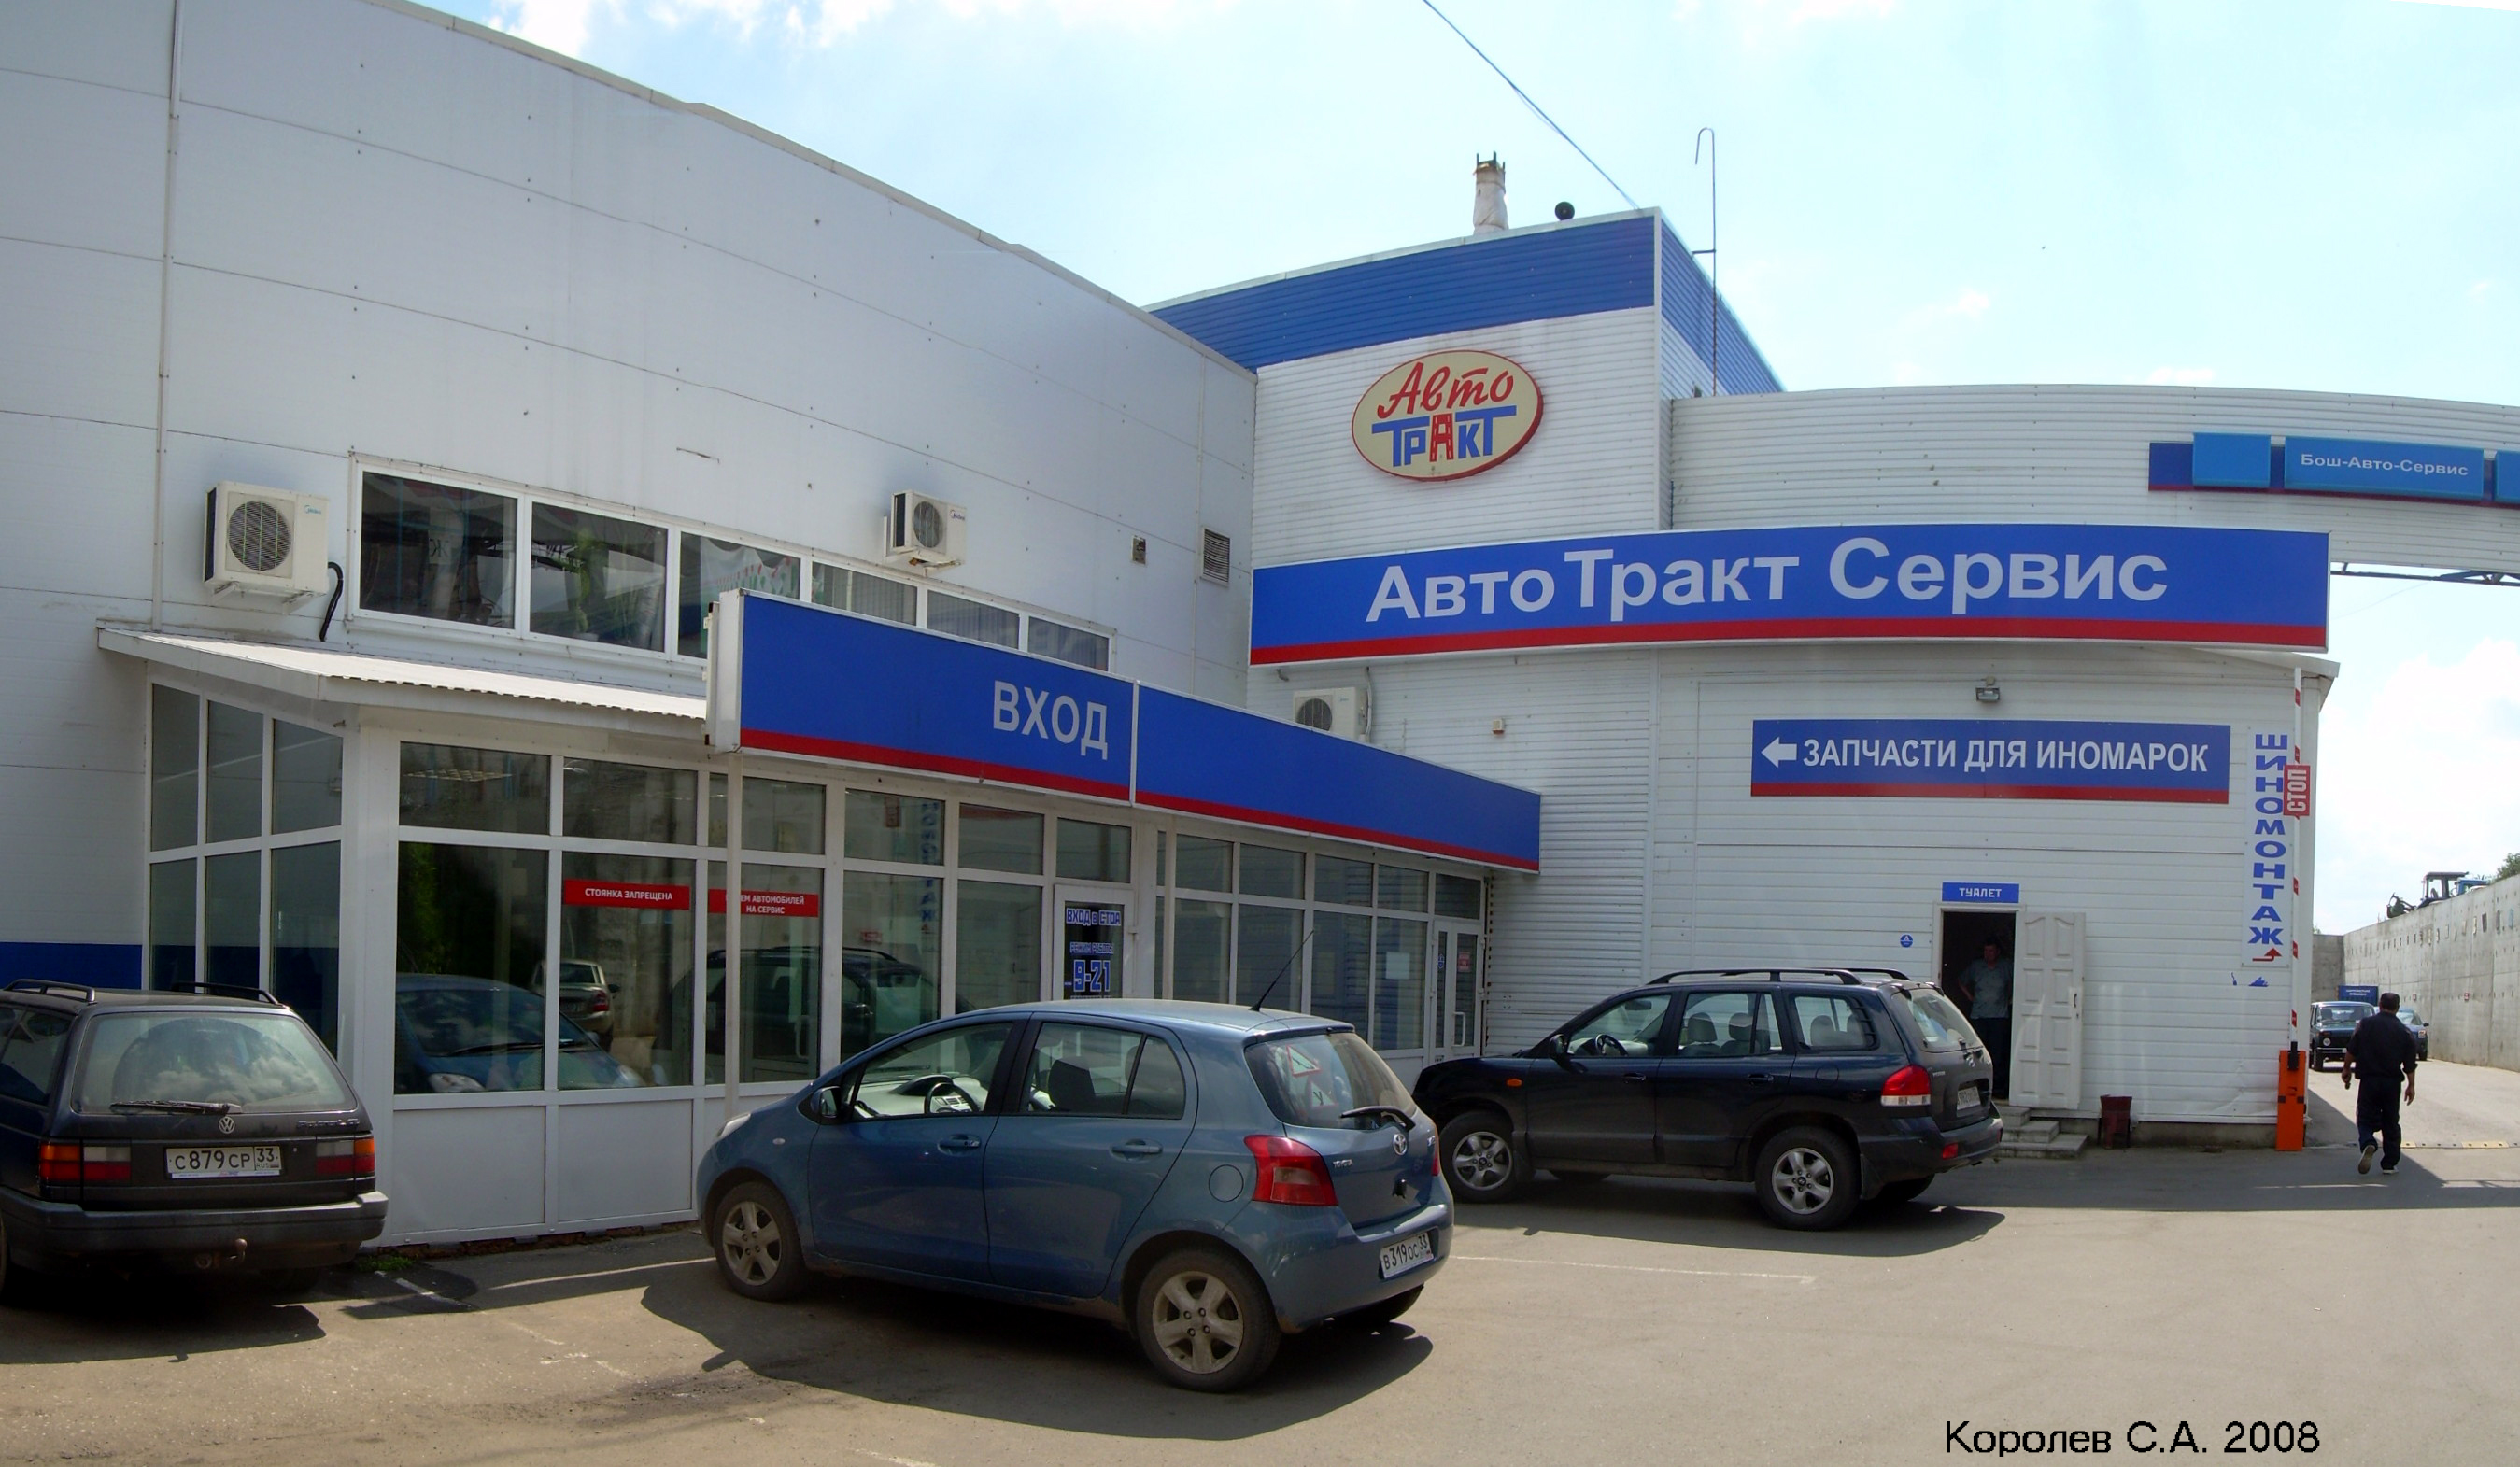 автосалон и сервис «ВАЗ» компании АвтоТракт на фото 2008 года на Куйбышева 24п во Владимире фото vgv